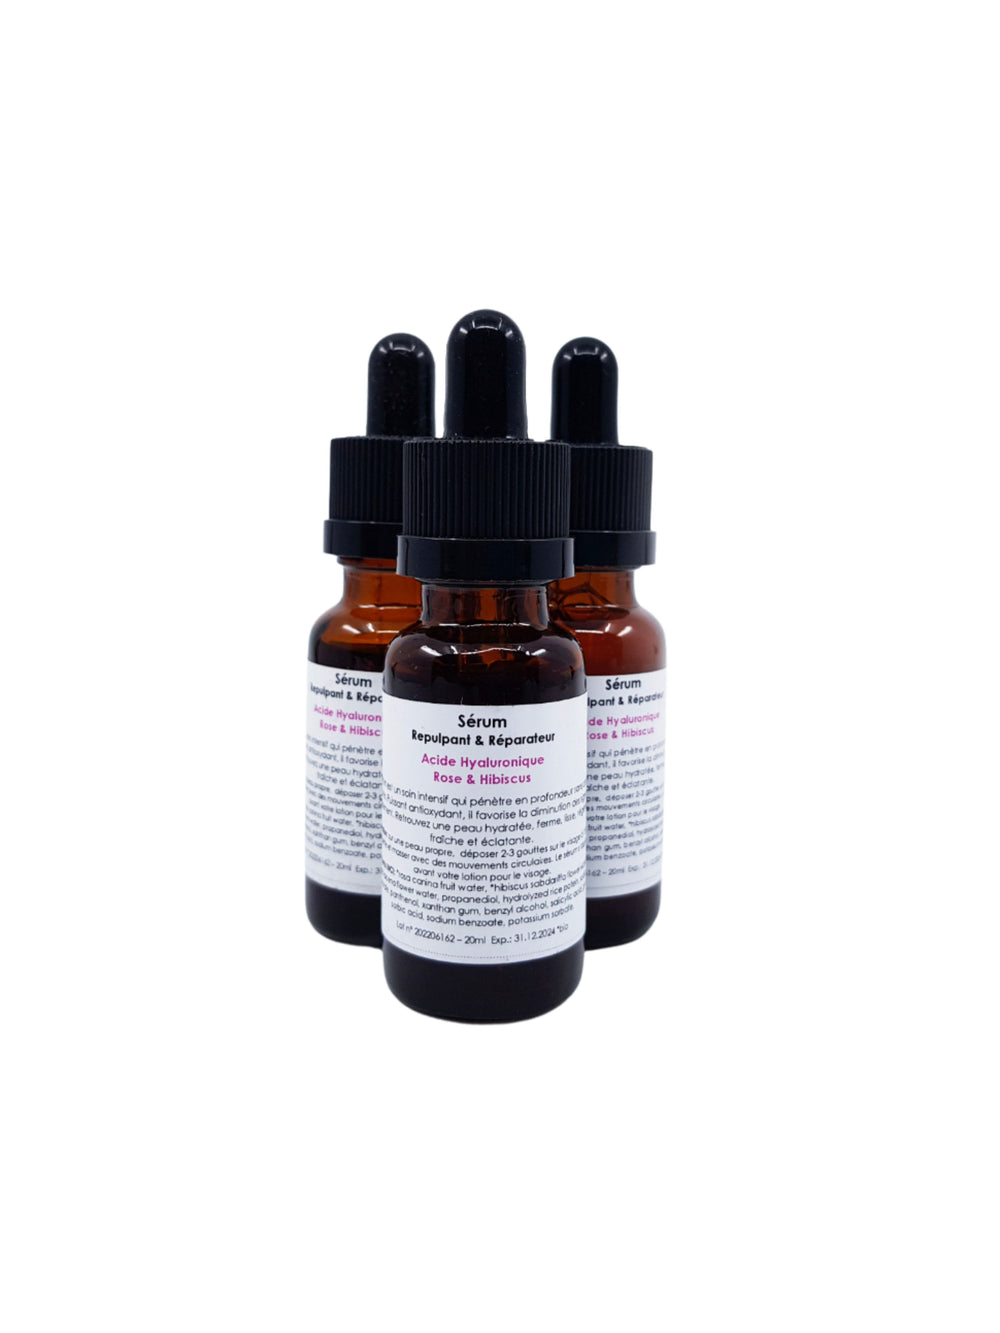 Sérum Hydratant Acide Hyaluronique Rose & Hibiscus - OSHA Biocosmetics